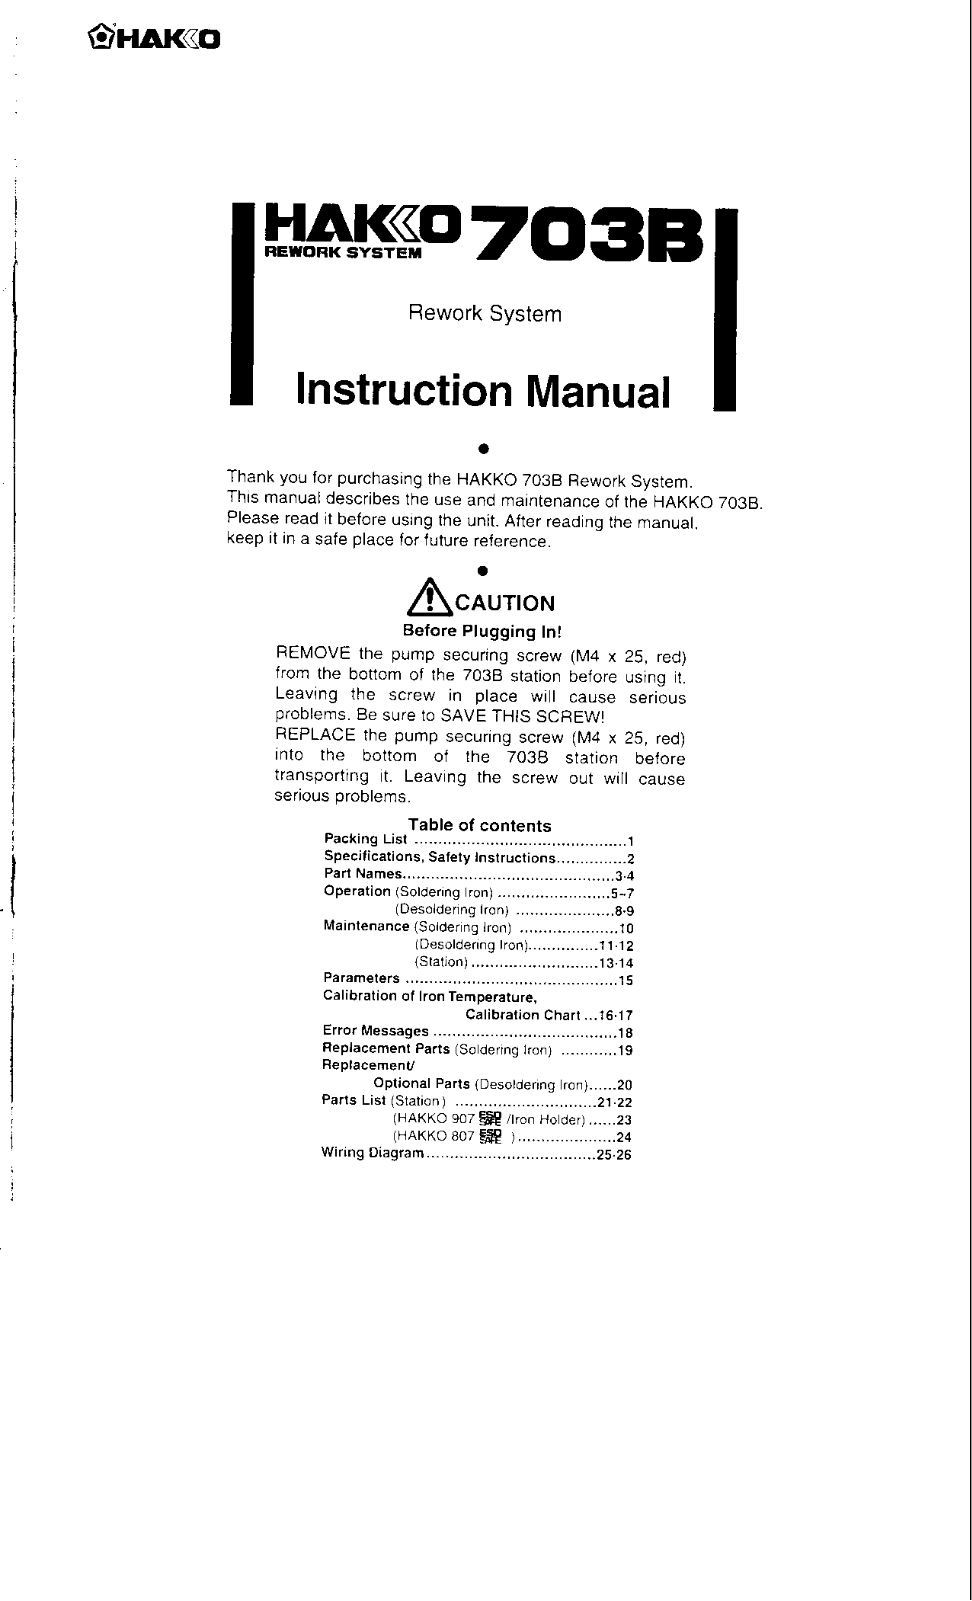 Hakko 703B User Manual